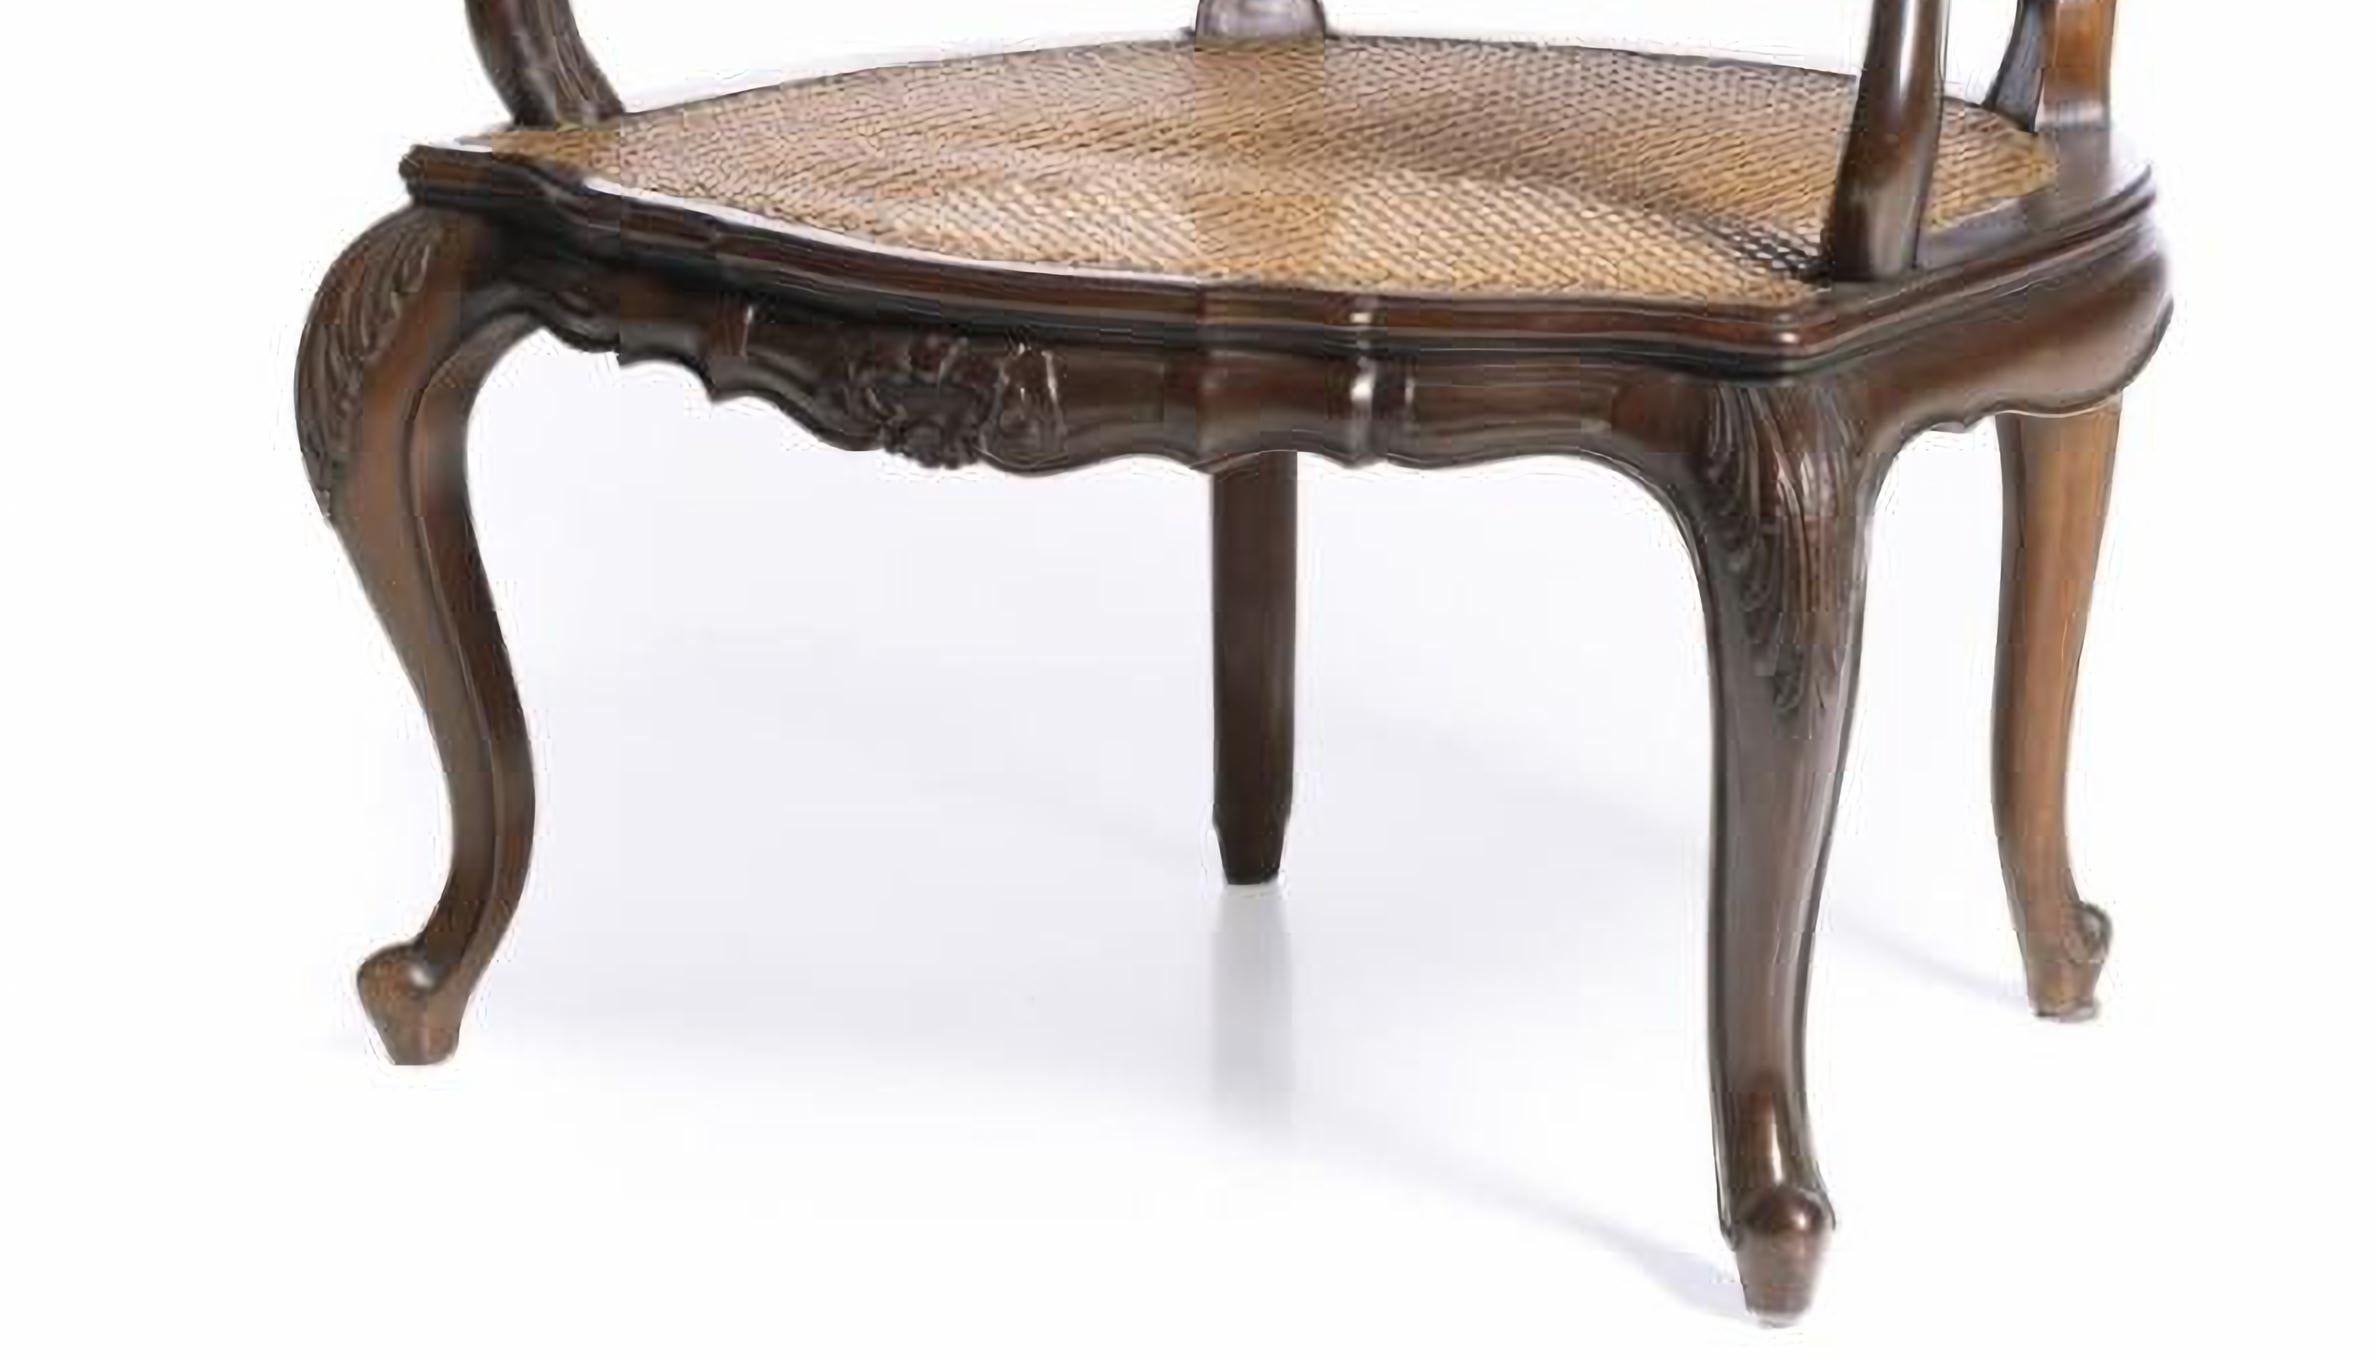 BEAU FAUTEUIL PORTUGAIS
du 19ème siècle
en bois d'acajou, dossier et assise en rotin. 
Signes d'utilisation. 
Dim. : 80 x 55 x 44 cm
bonne condition